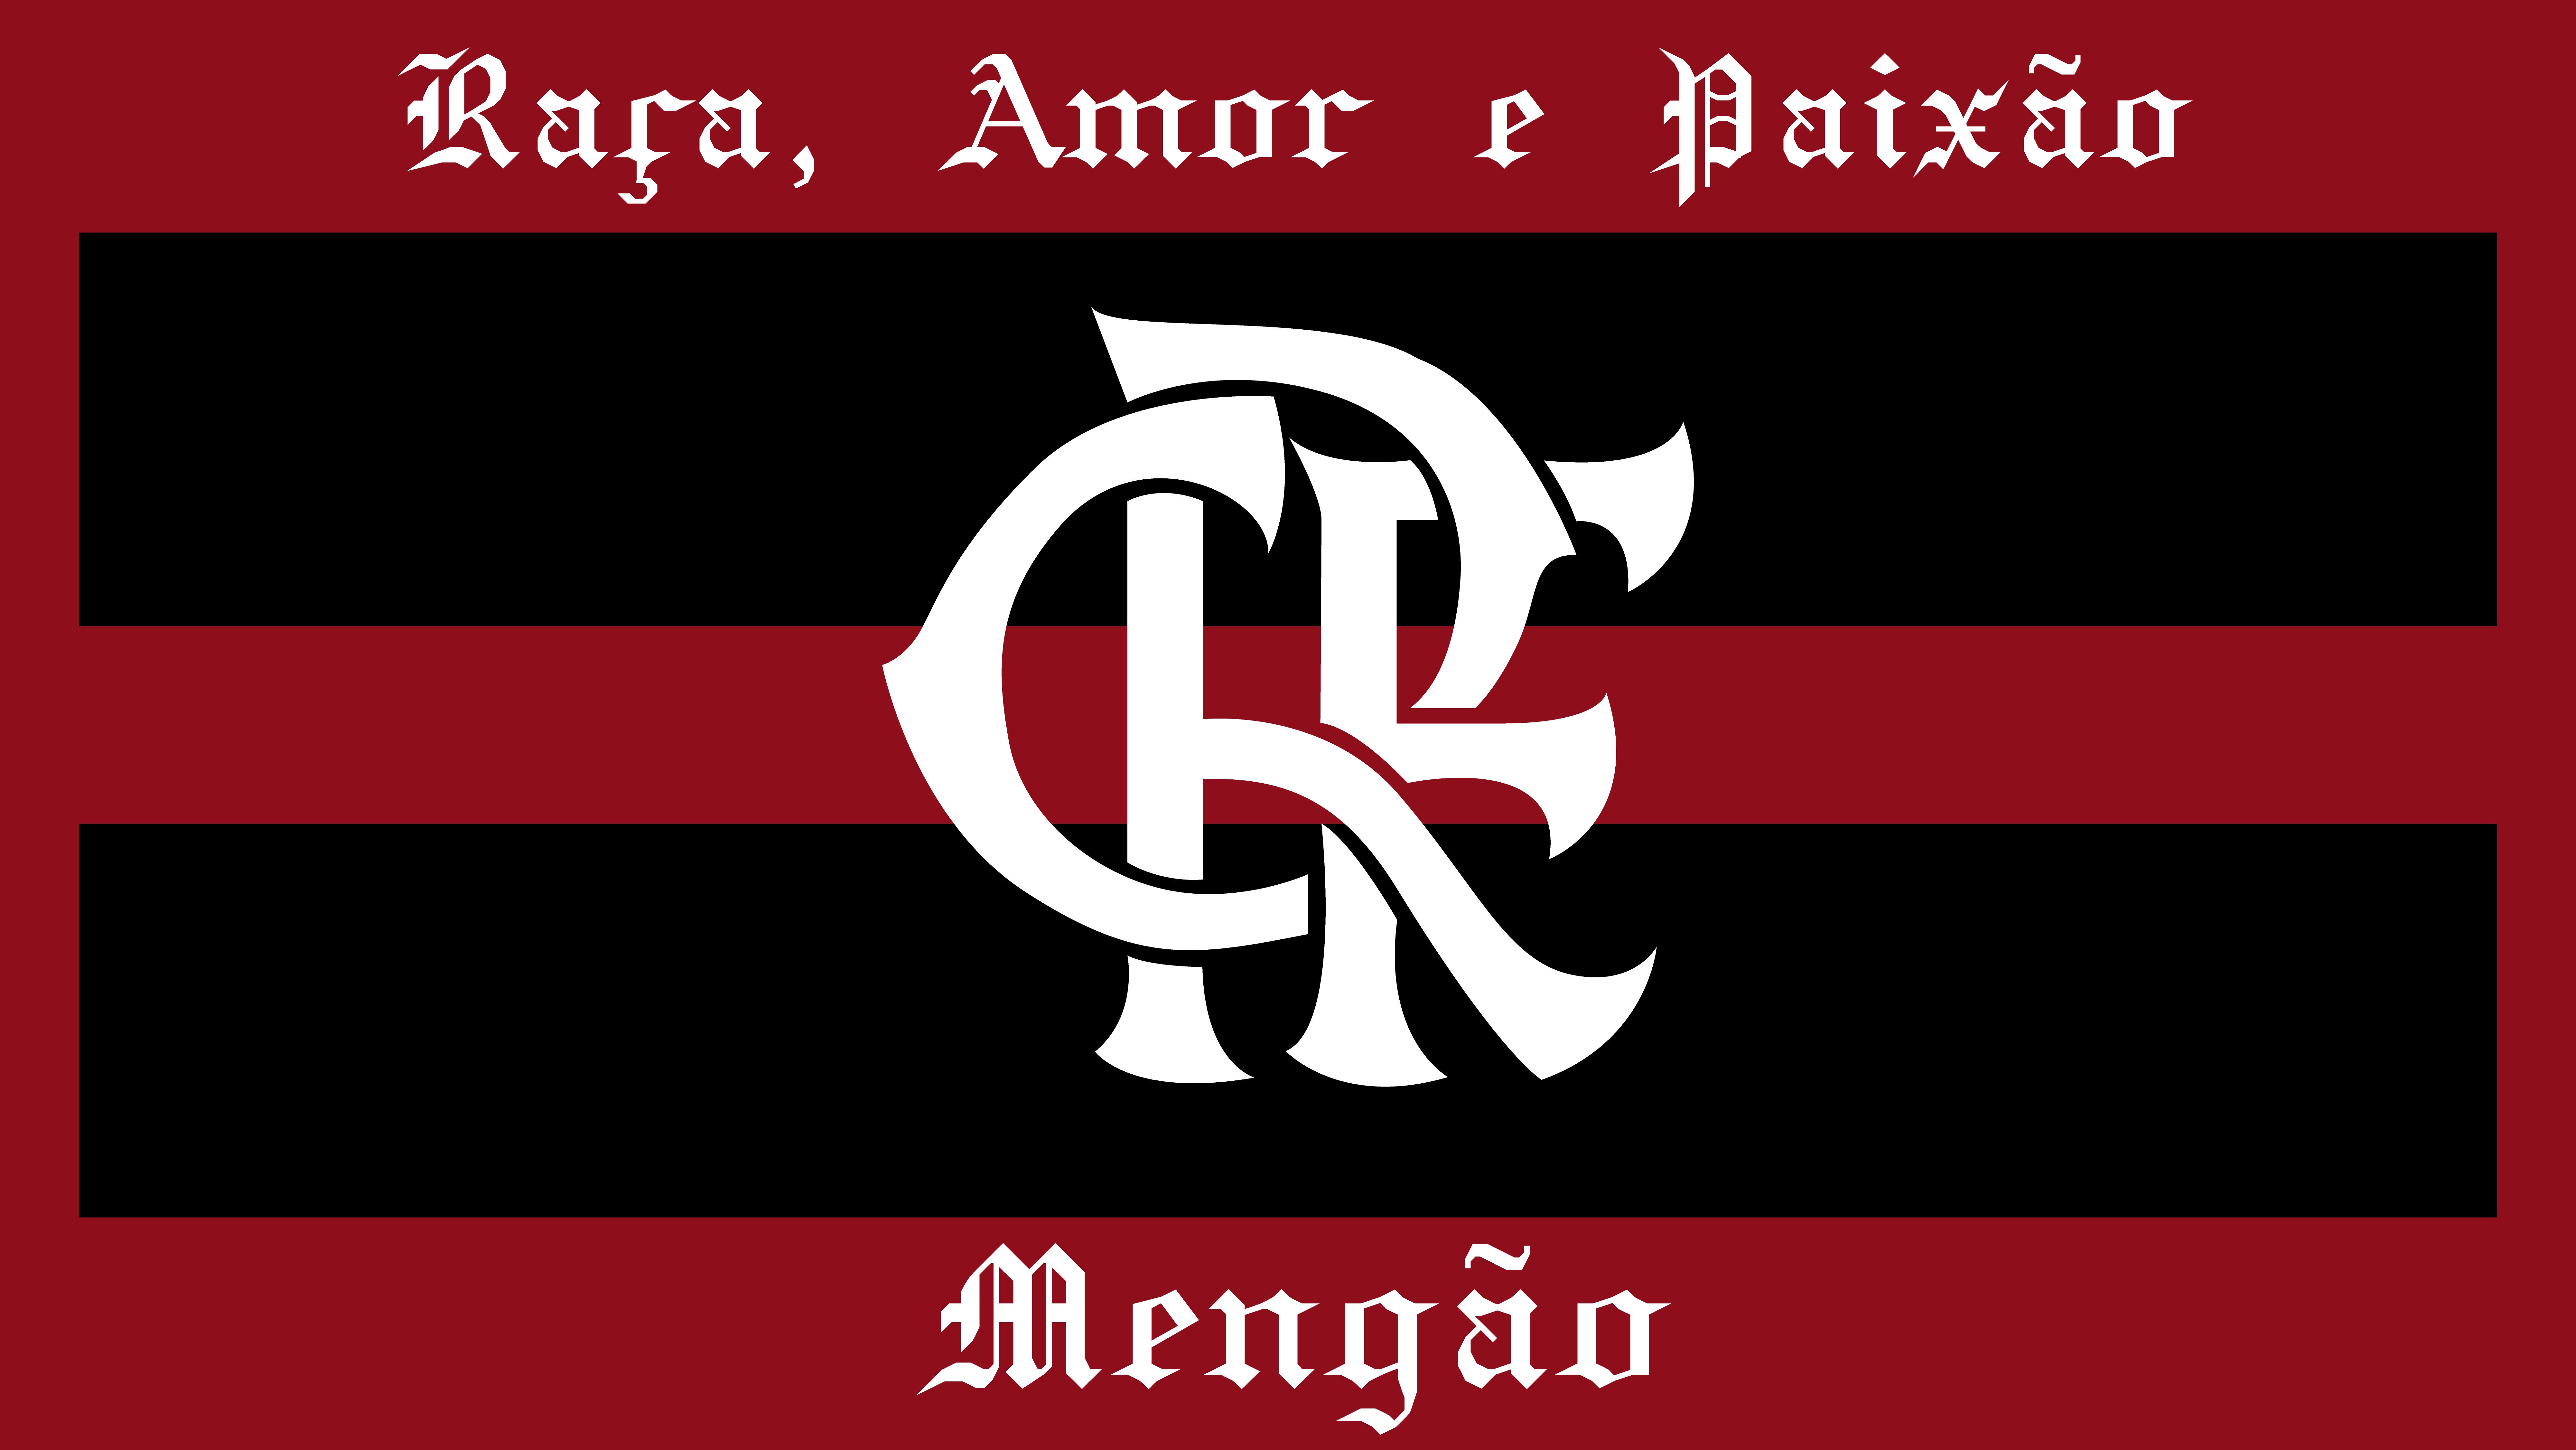 clube de regatas do flamengo, sports, emblem, logo, soccer